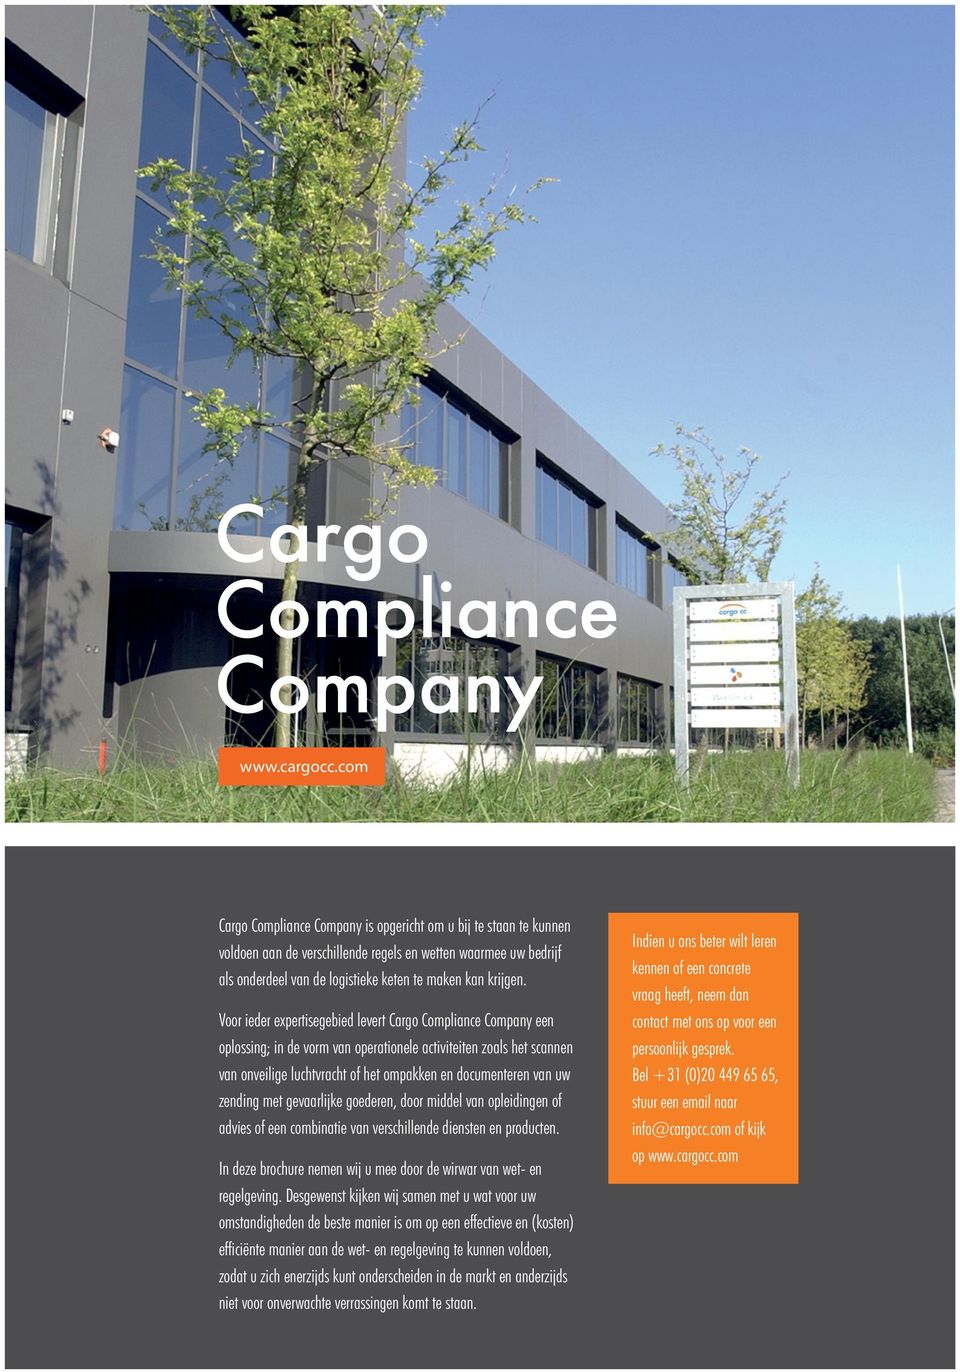 Voor ieder expertisegebied levert Cargo Compliance Company een oplossing; in de vorm van operationele activiteiten zoals het scannen van onveilige luchtvracht of het ompakken en documenteren van uw